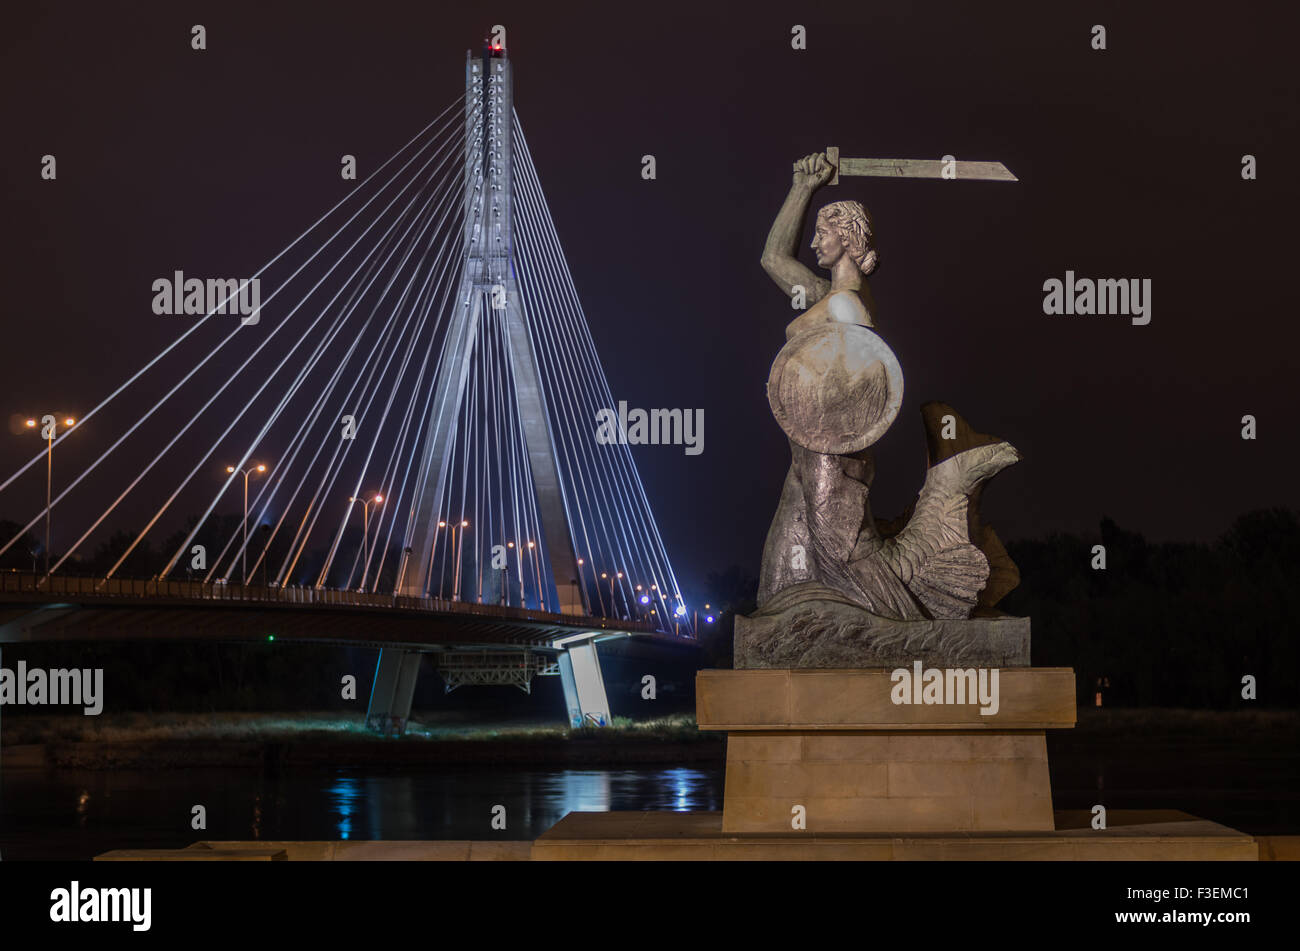 Syrenka (Mermaid of Warsaw) i Most Świętokrzyski (Holly Cross Bridge) by night, Warszawa Stock Photo